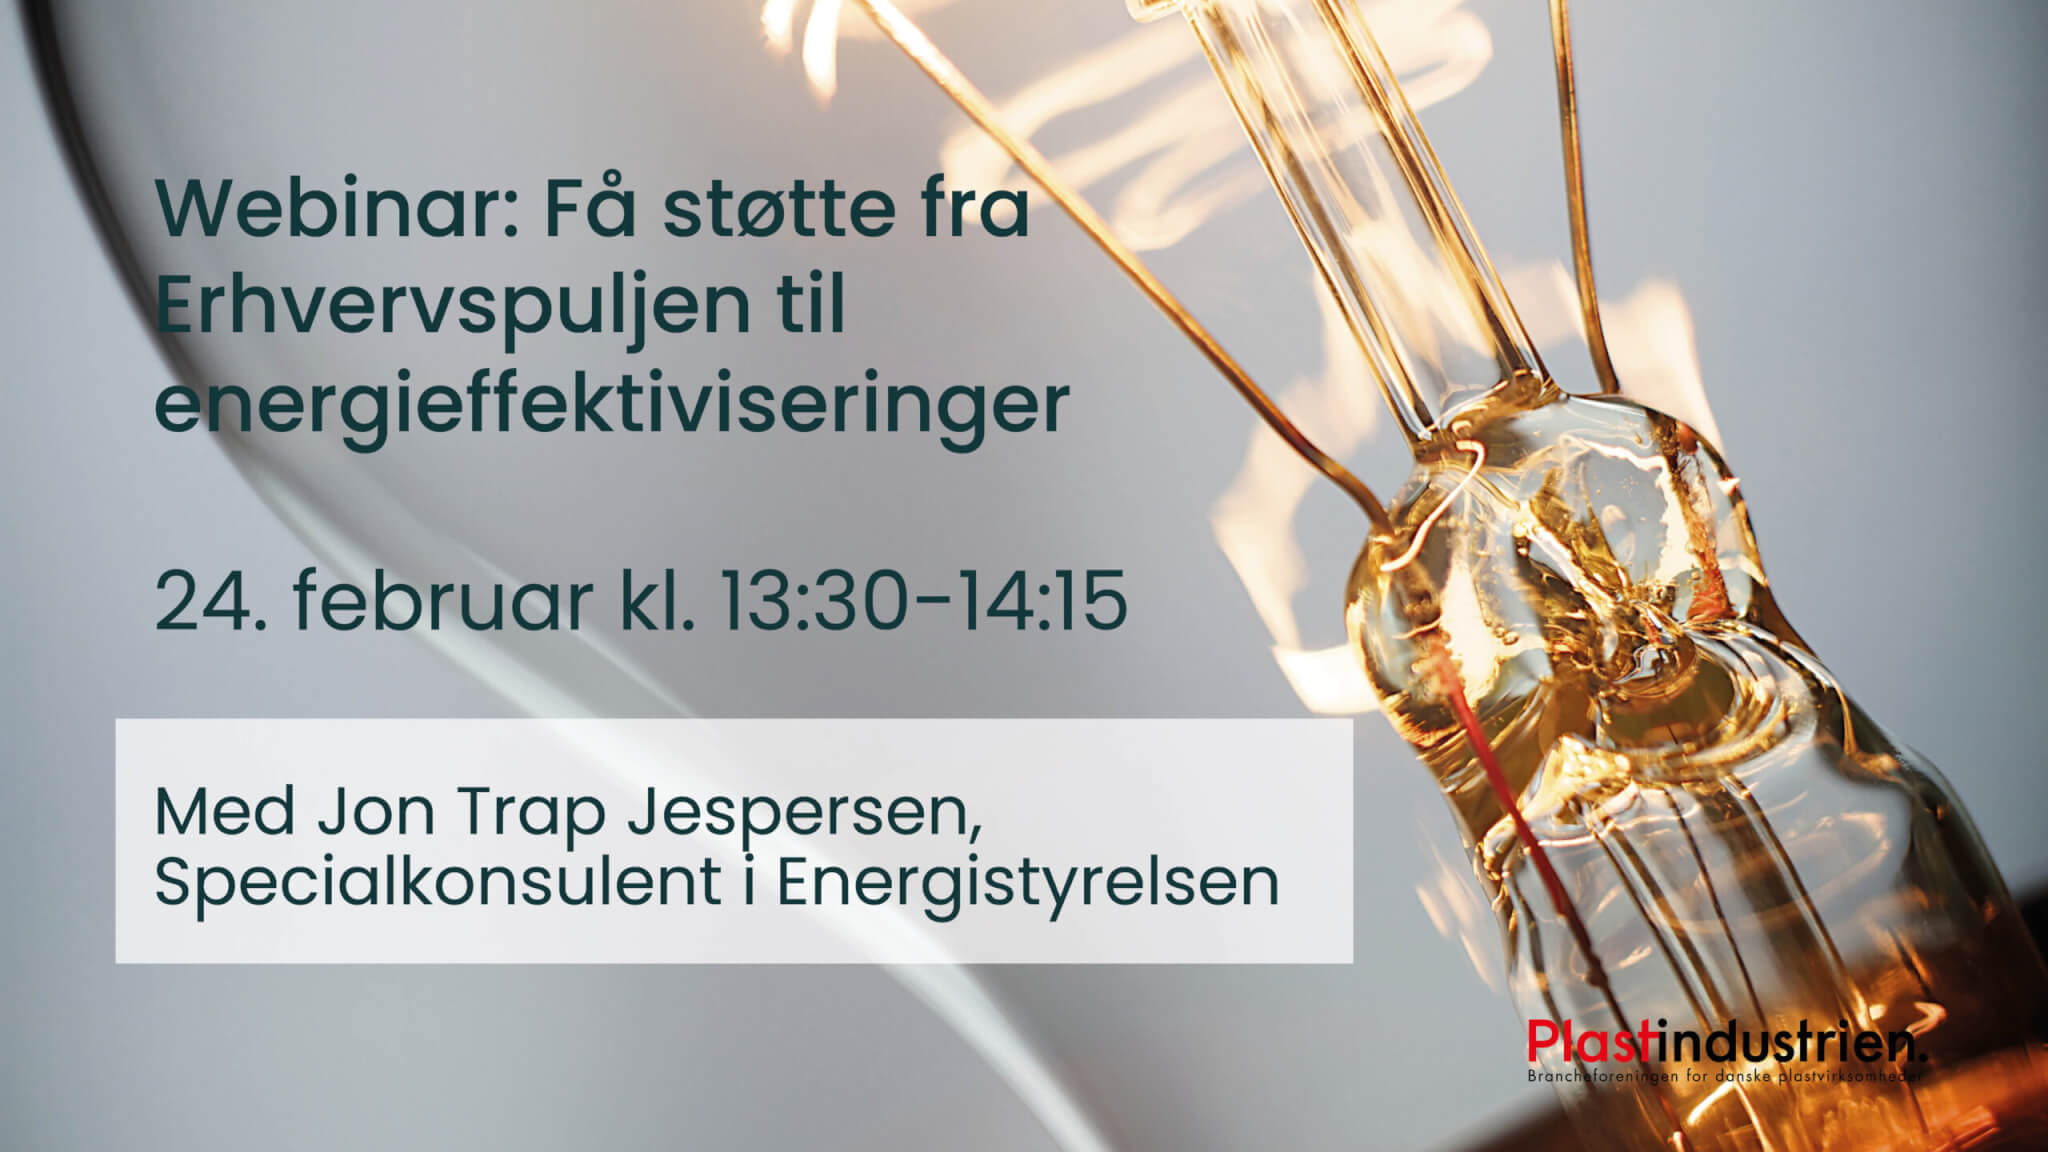 Få Erhvervspuljen til energieffektiviseringer | plast.dk